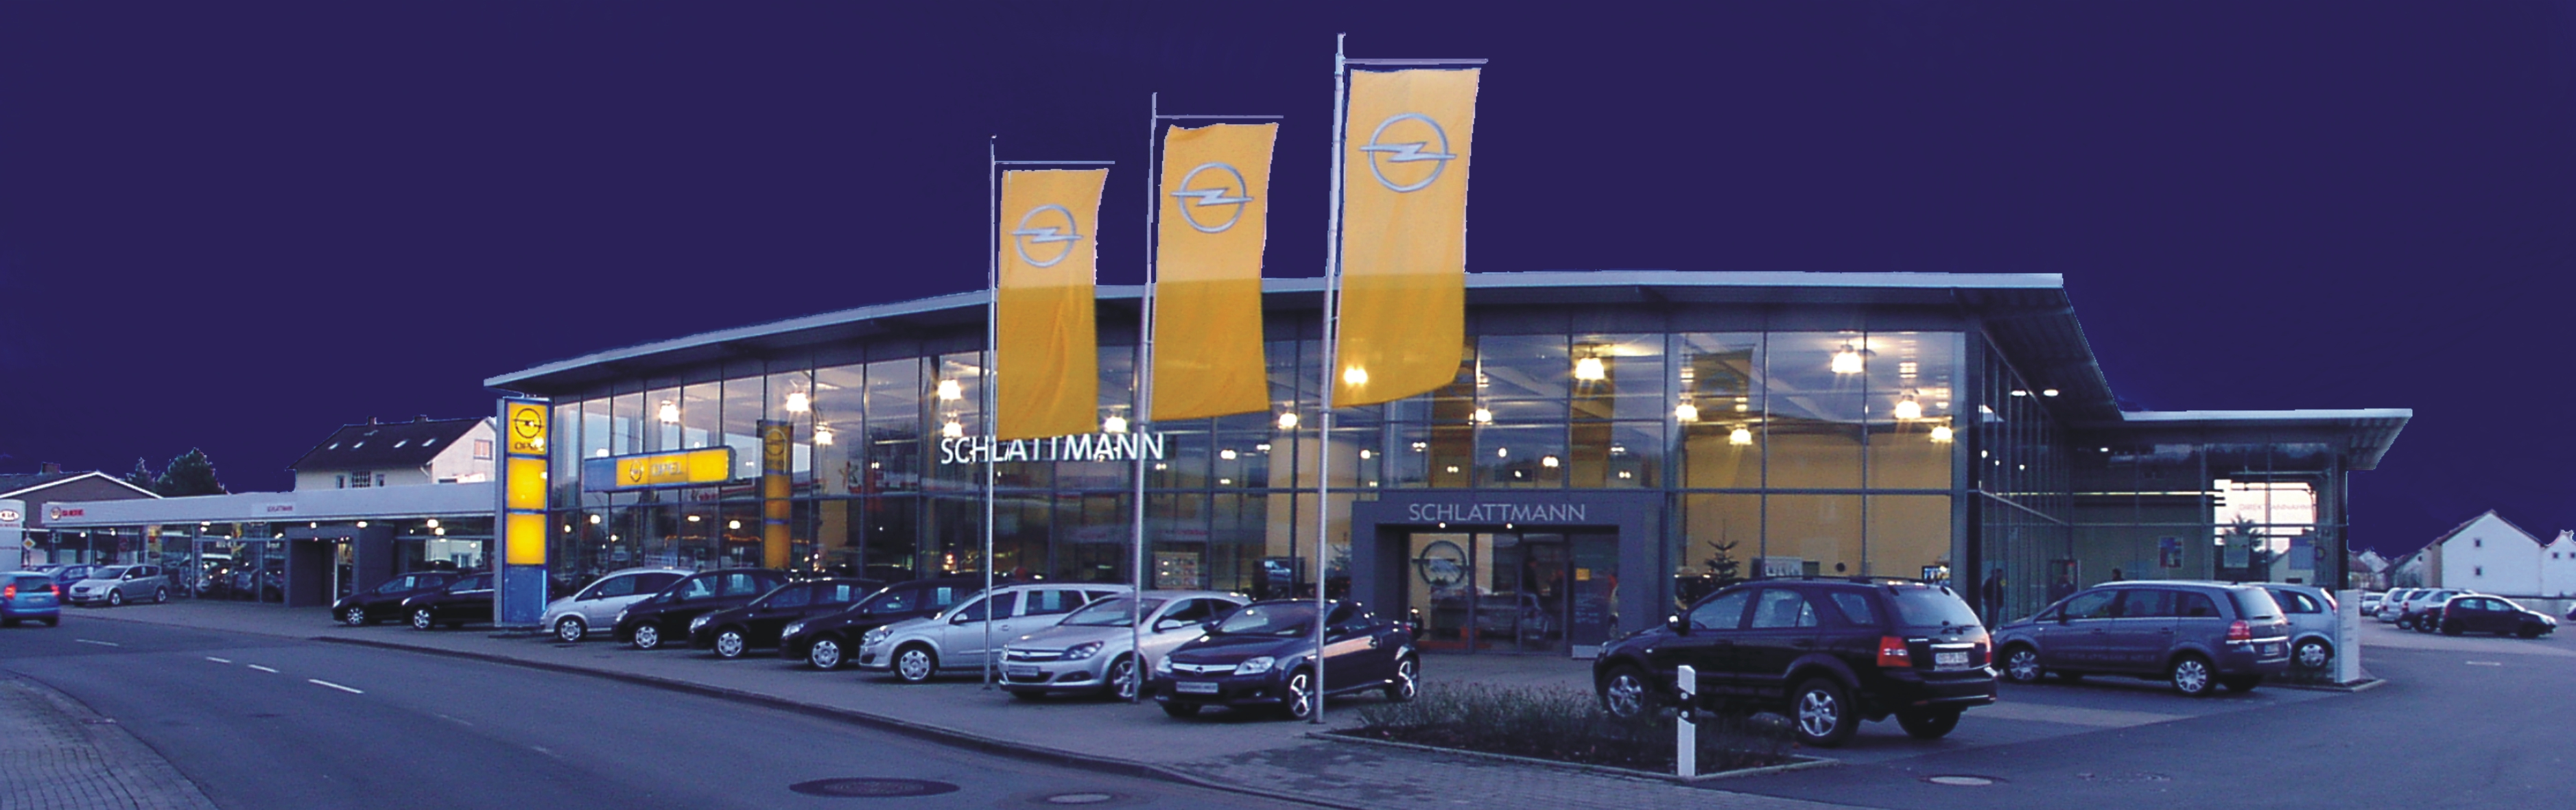 Bild 2 Schlattmann Autohaus GmbH & Co. KG, Opel u. Kia, Karosseriebaumeisterbetrieb in Melle